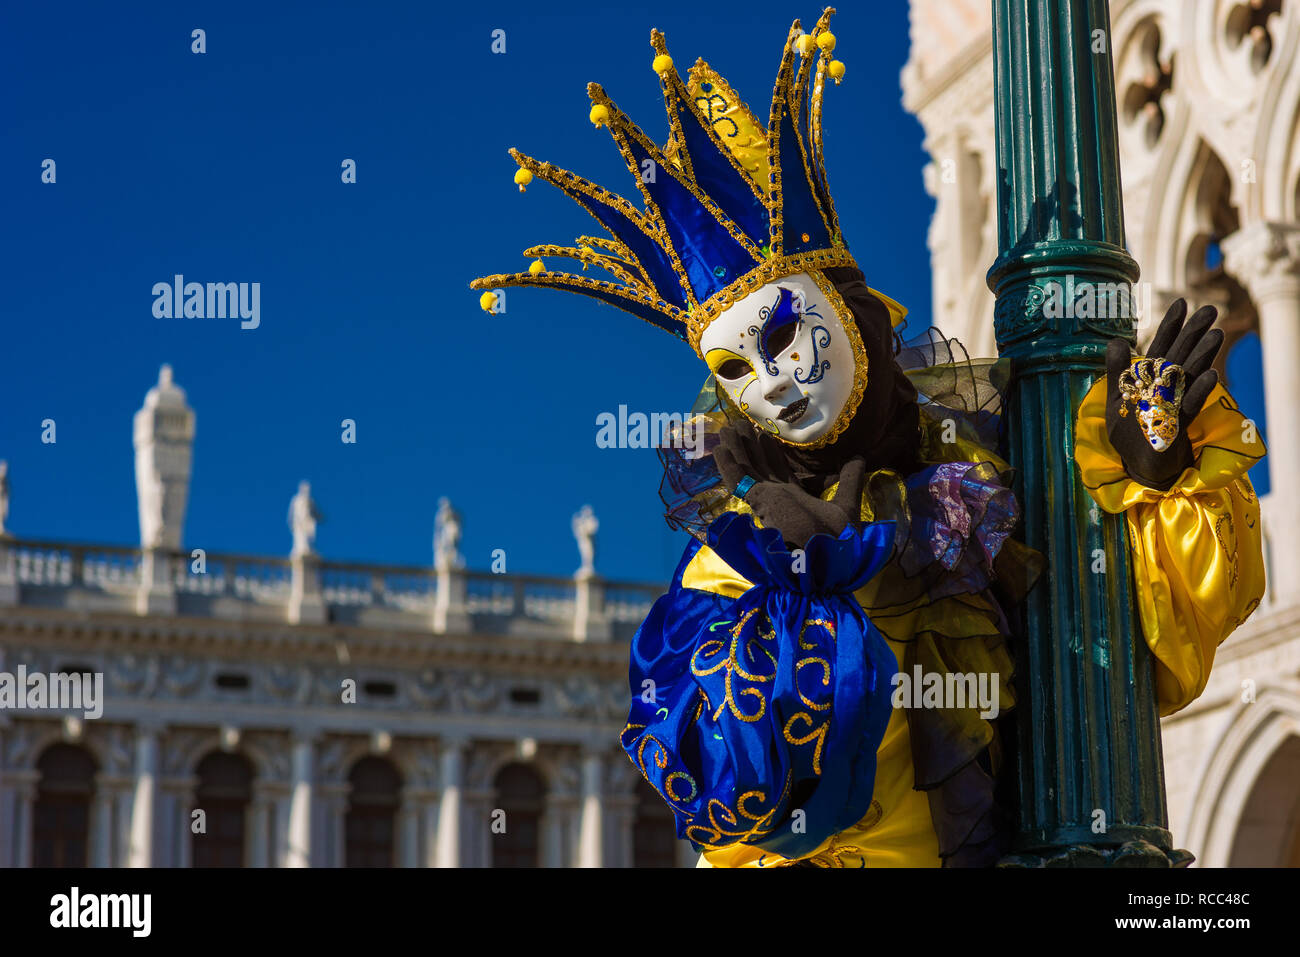 Karneval in Venedig. Eine wunderschöne venezianische Maske mit Jester's Cap vor dem Dogenpalast Stockfoto